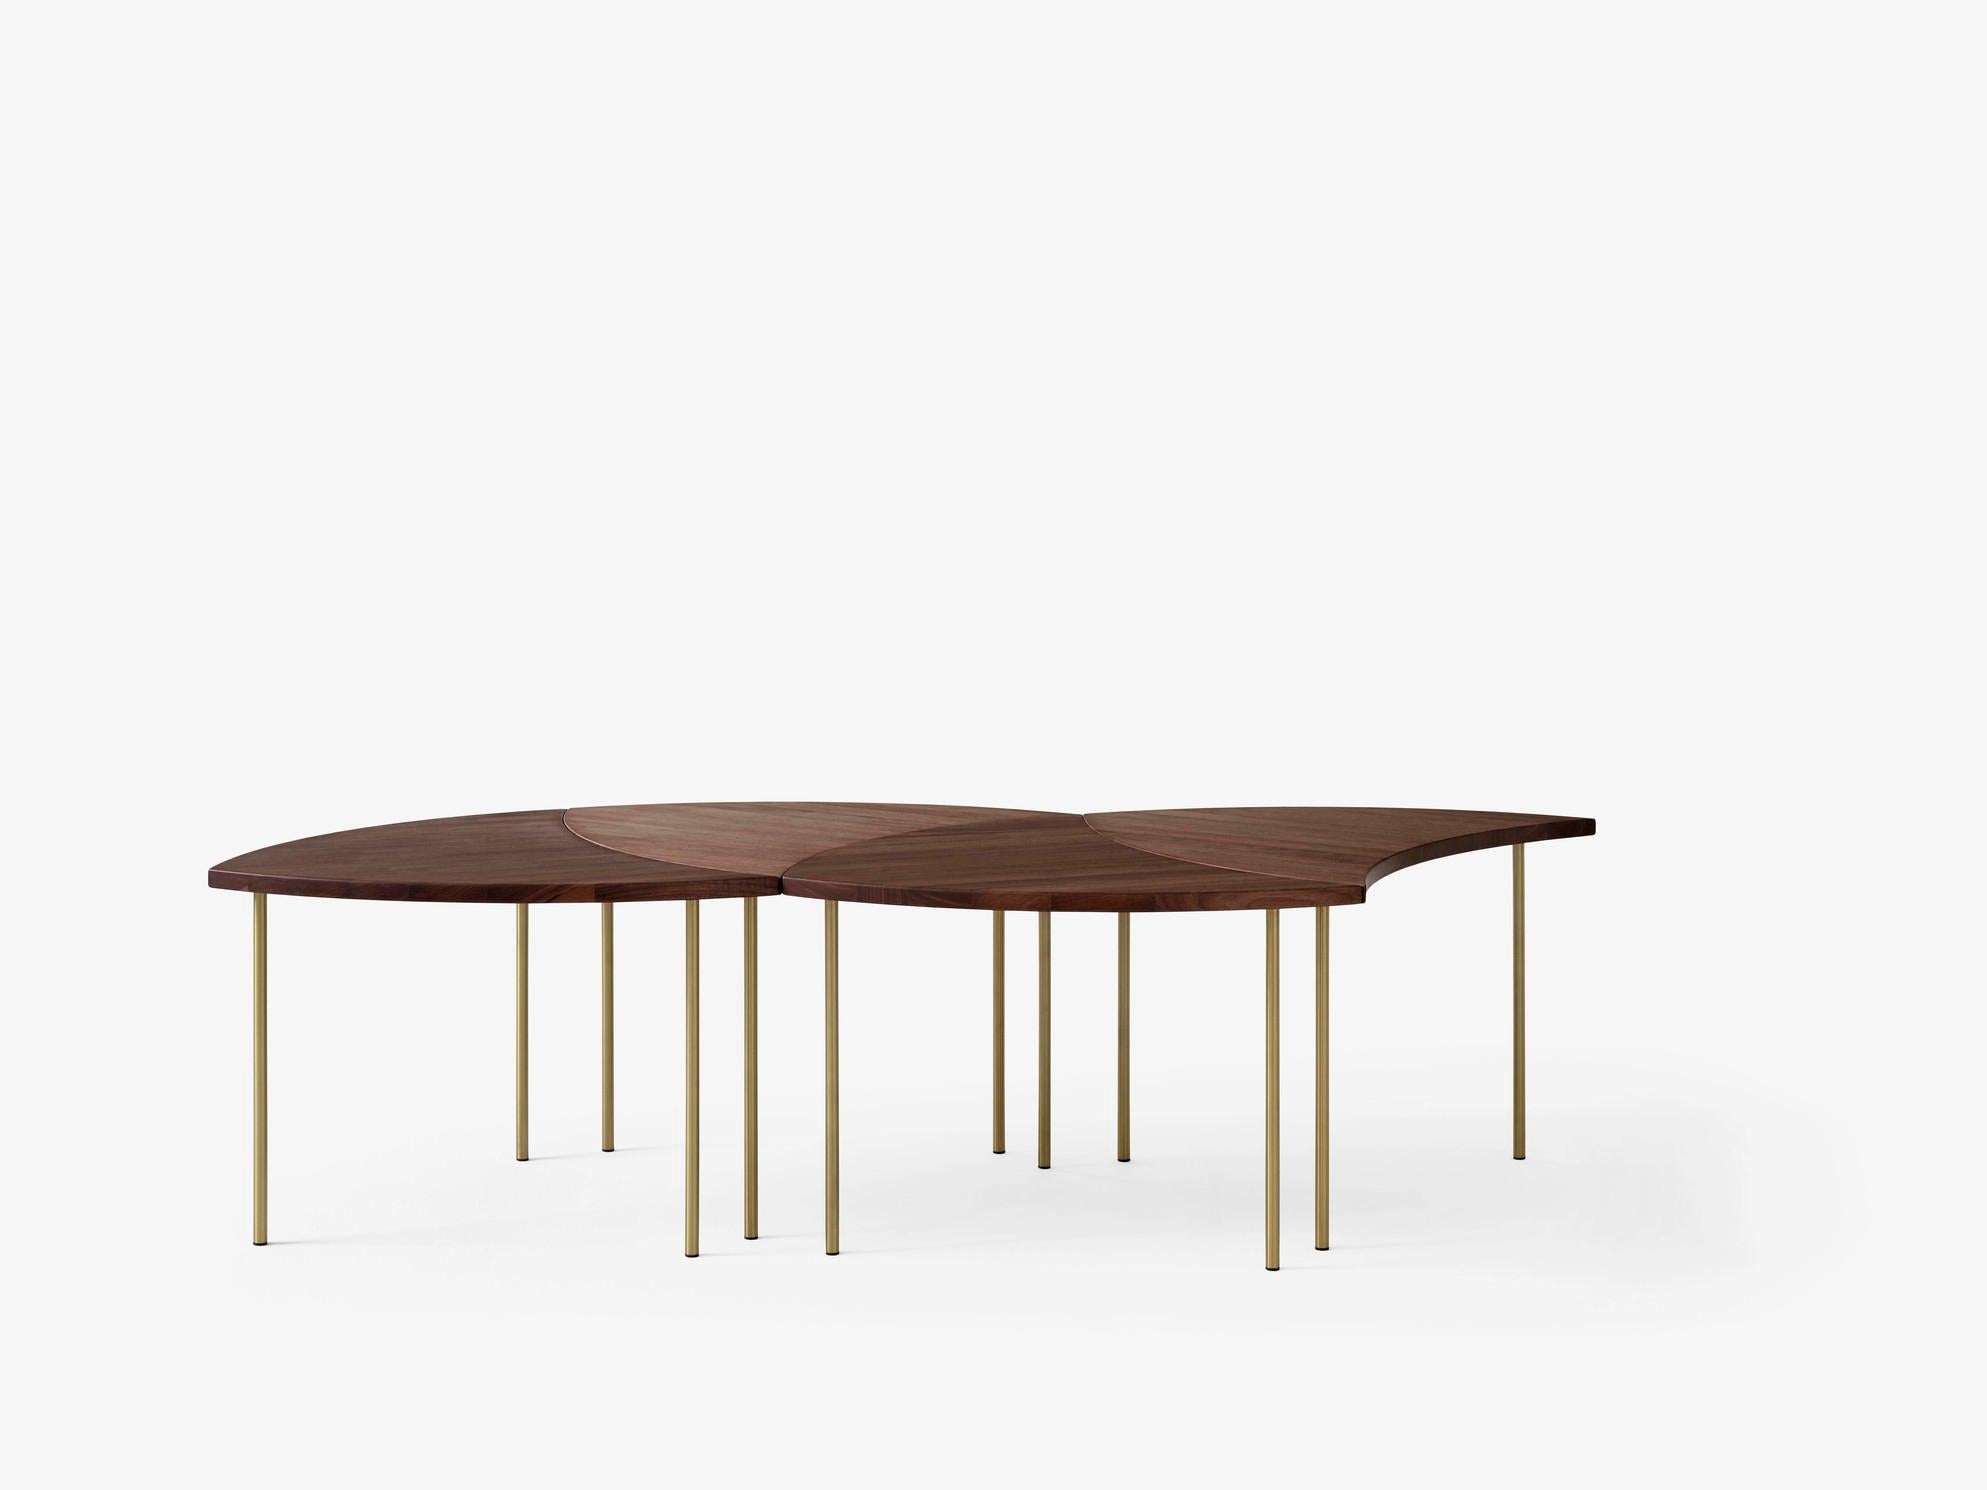 Mince et galbée, la table Pinwheel de Hvidt & Mølgaard de 1953 est une pièce polyvalente. Conçue pour être adaptable, elle se compose d'une série de petites tables qui peuvent être assemblées pour former une pièce unique et élégante. Disponible en